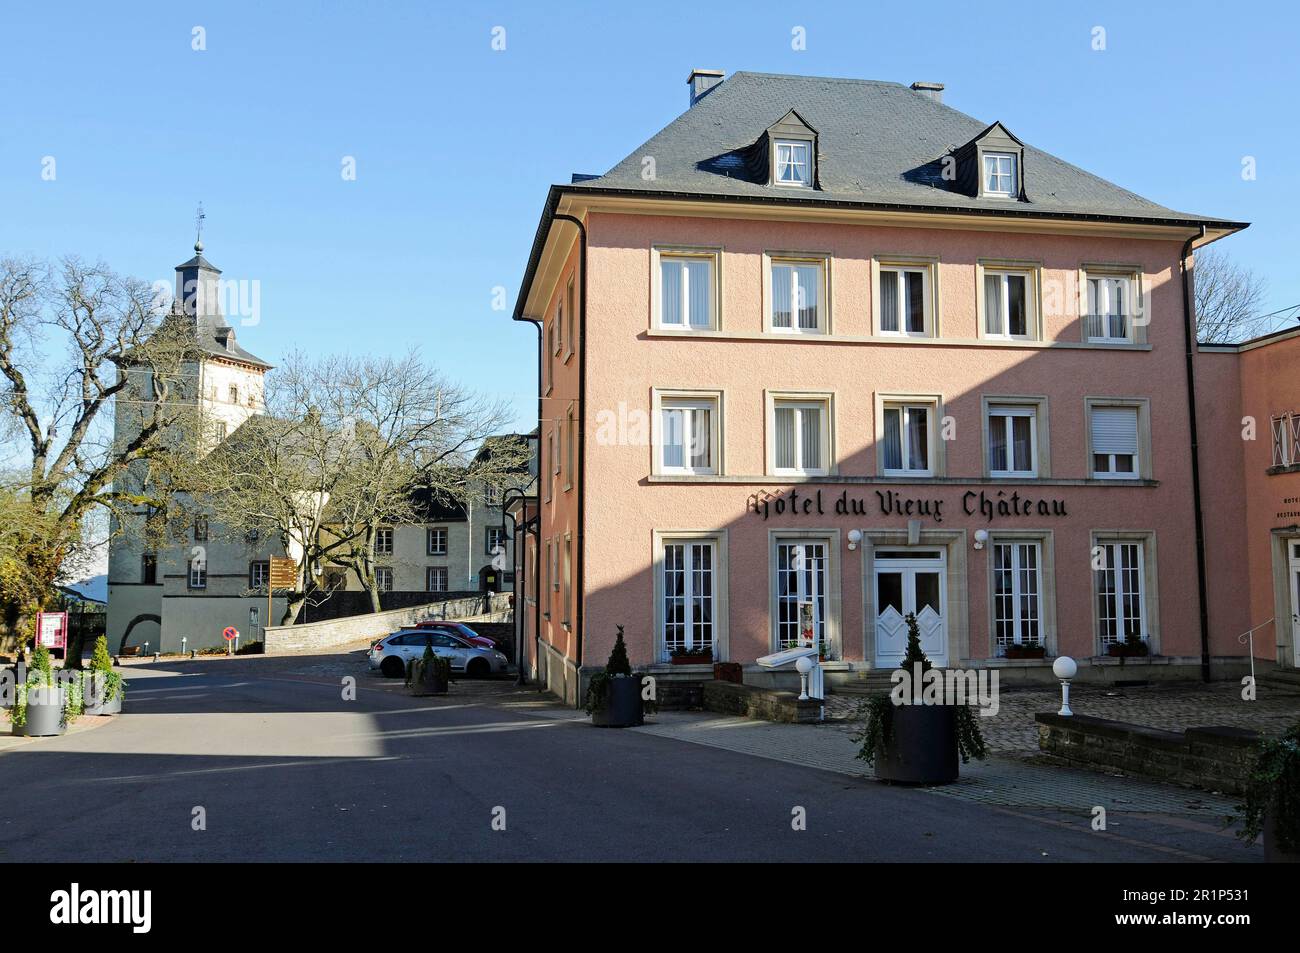 Hotel du Vieux Chateau, Castle, Wiltz, Luxembourg Stock Photo